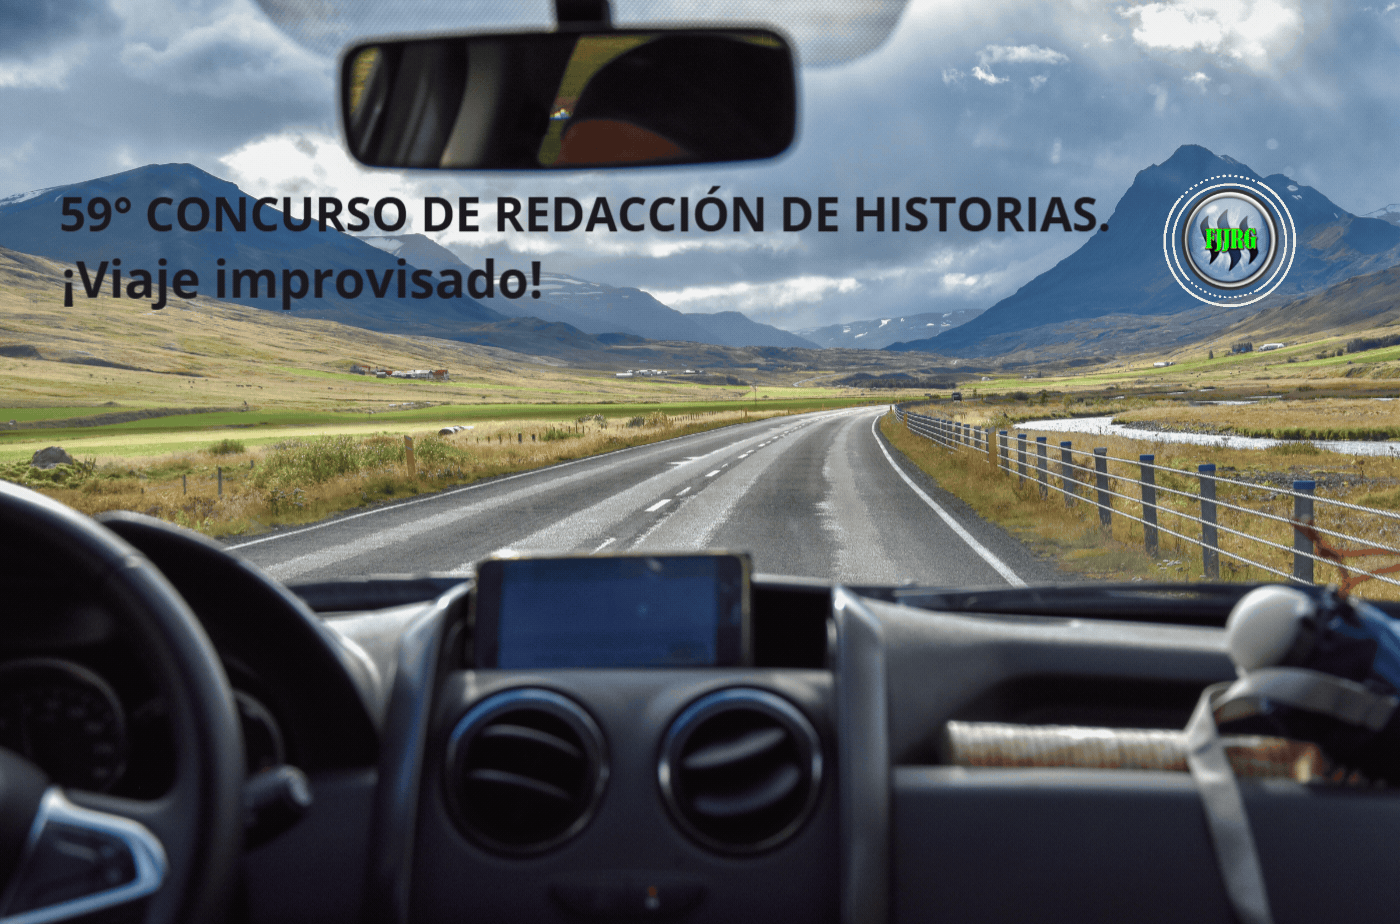 59° CONCURSO DE REDACCIÓN DE HISTORIAS. _ ¡Viaje improvisado!.gif